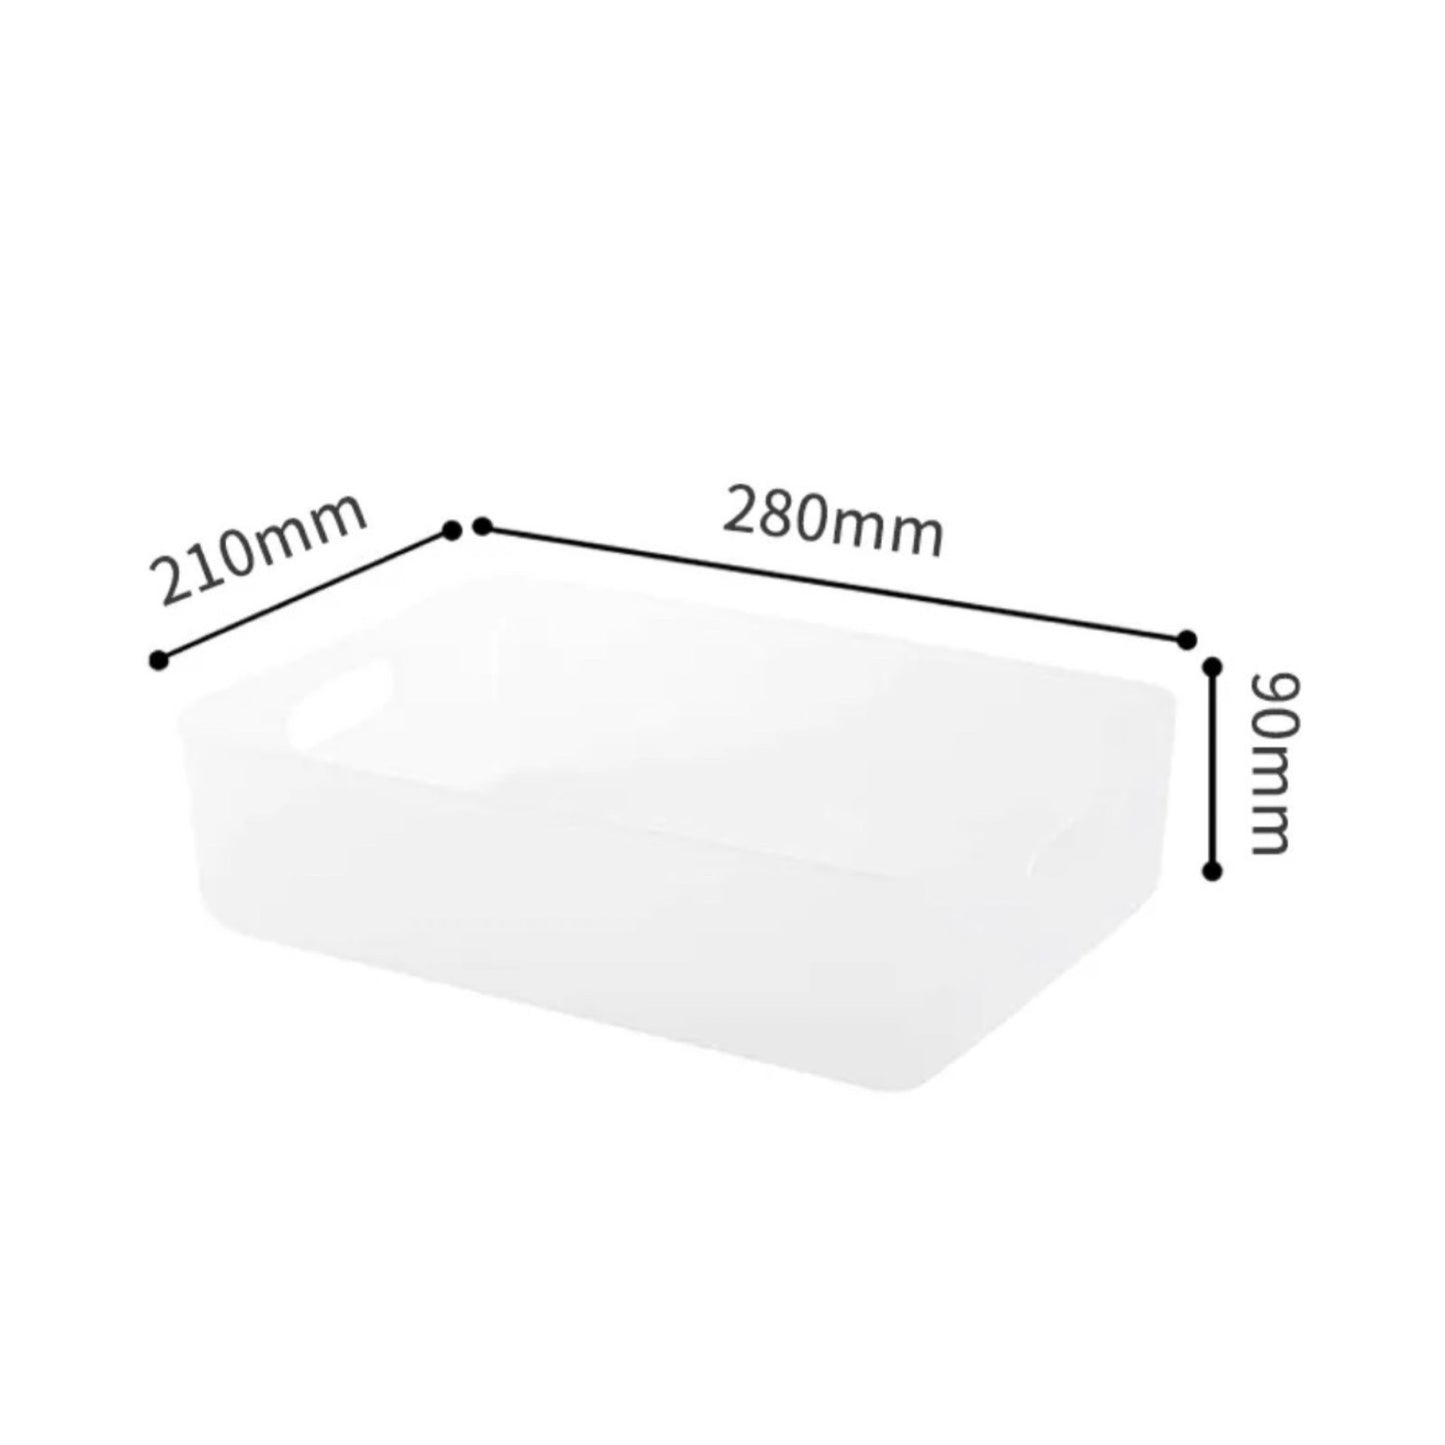 Weiße Aufbewahrungsbox mit Maßangaben. Die Länge beträgt 280 mm an der oberen Kante, die Breite 210 mm an der seitlichen Kante und die Höhe der Box ist 90 mm.